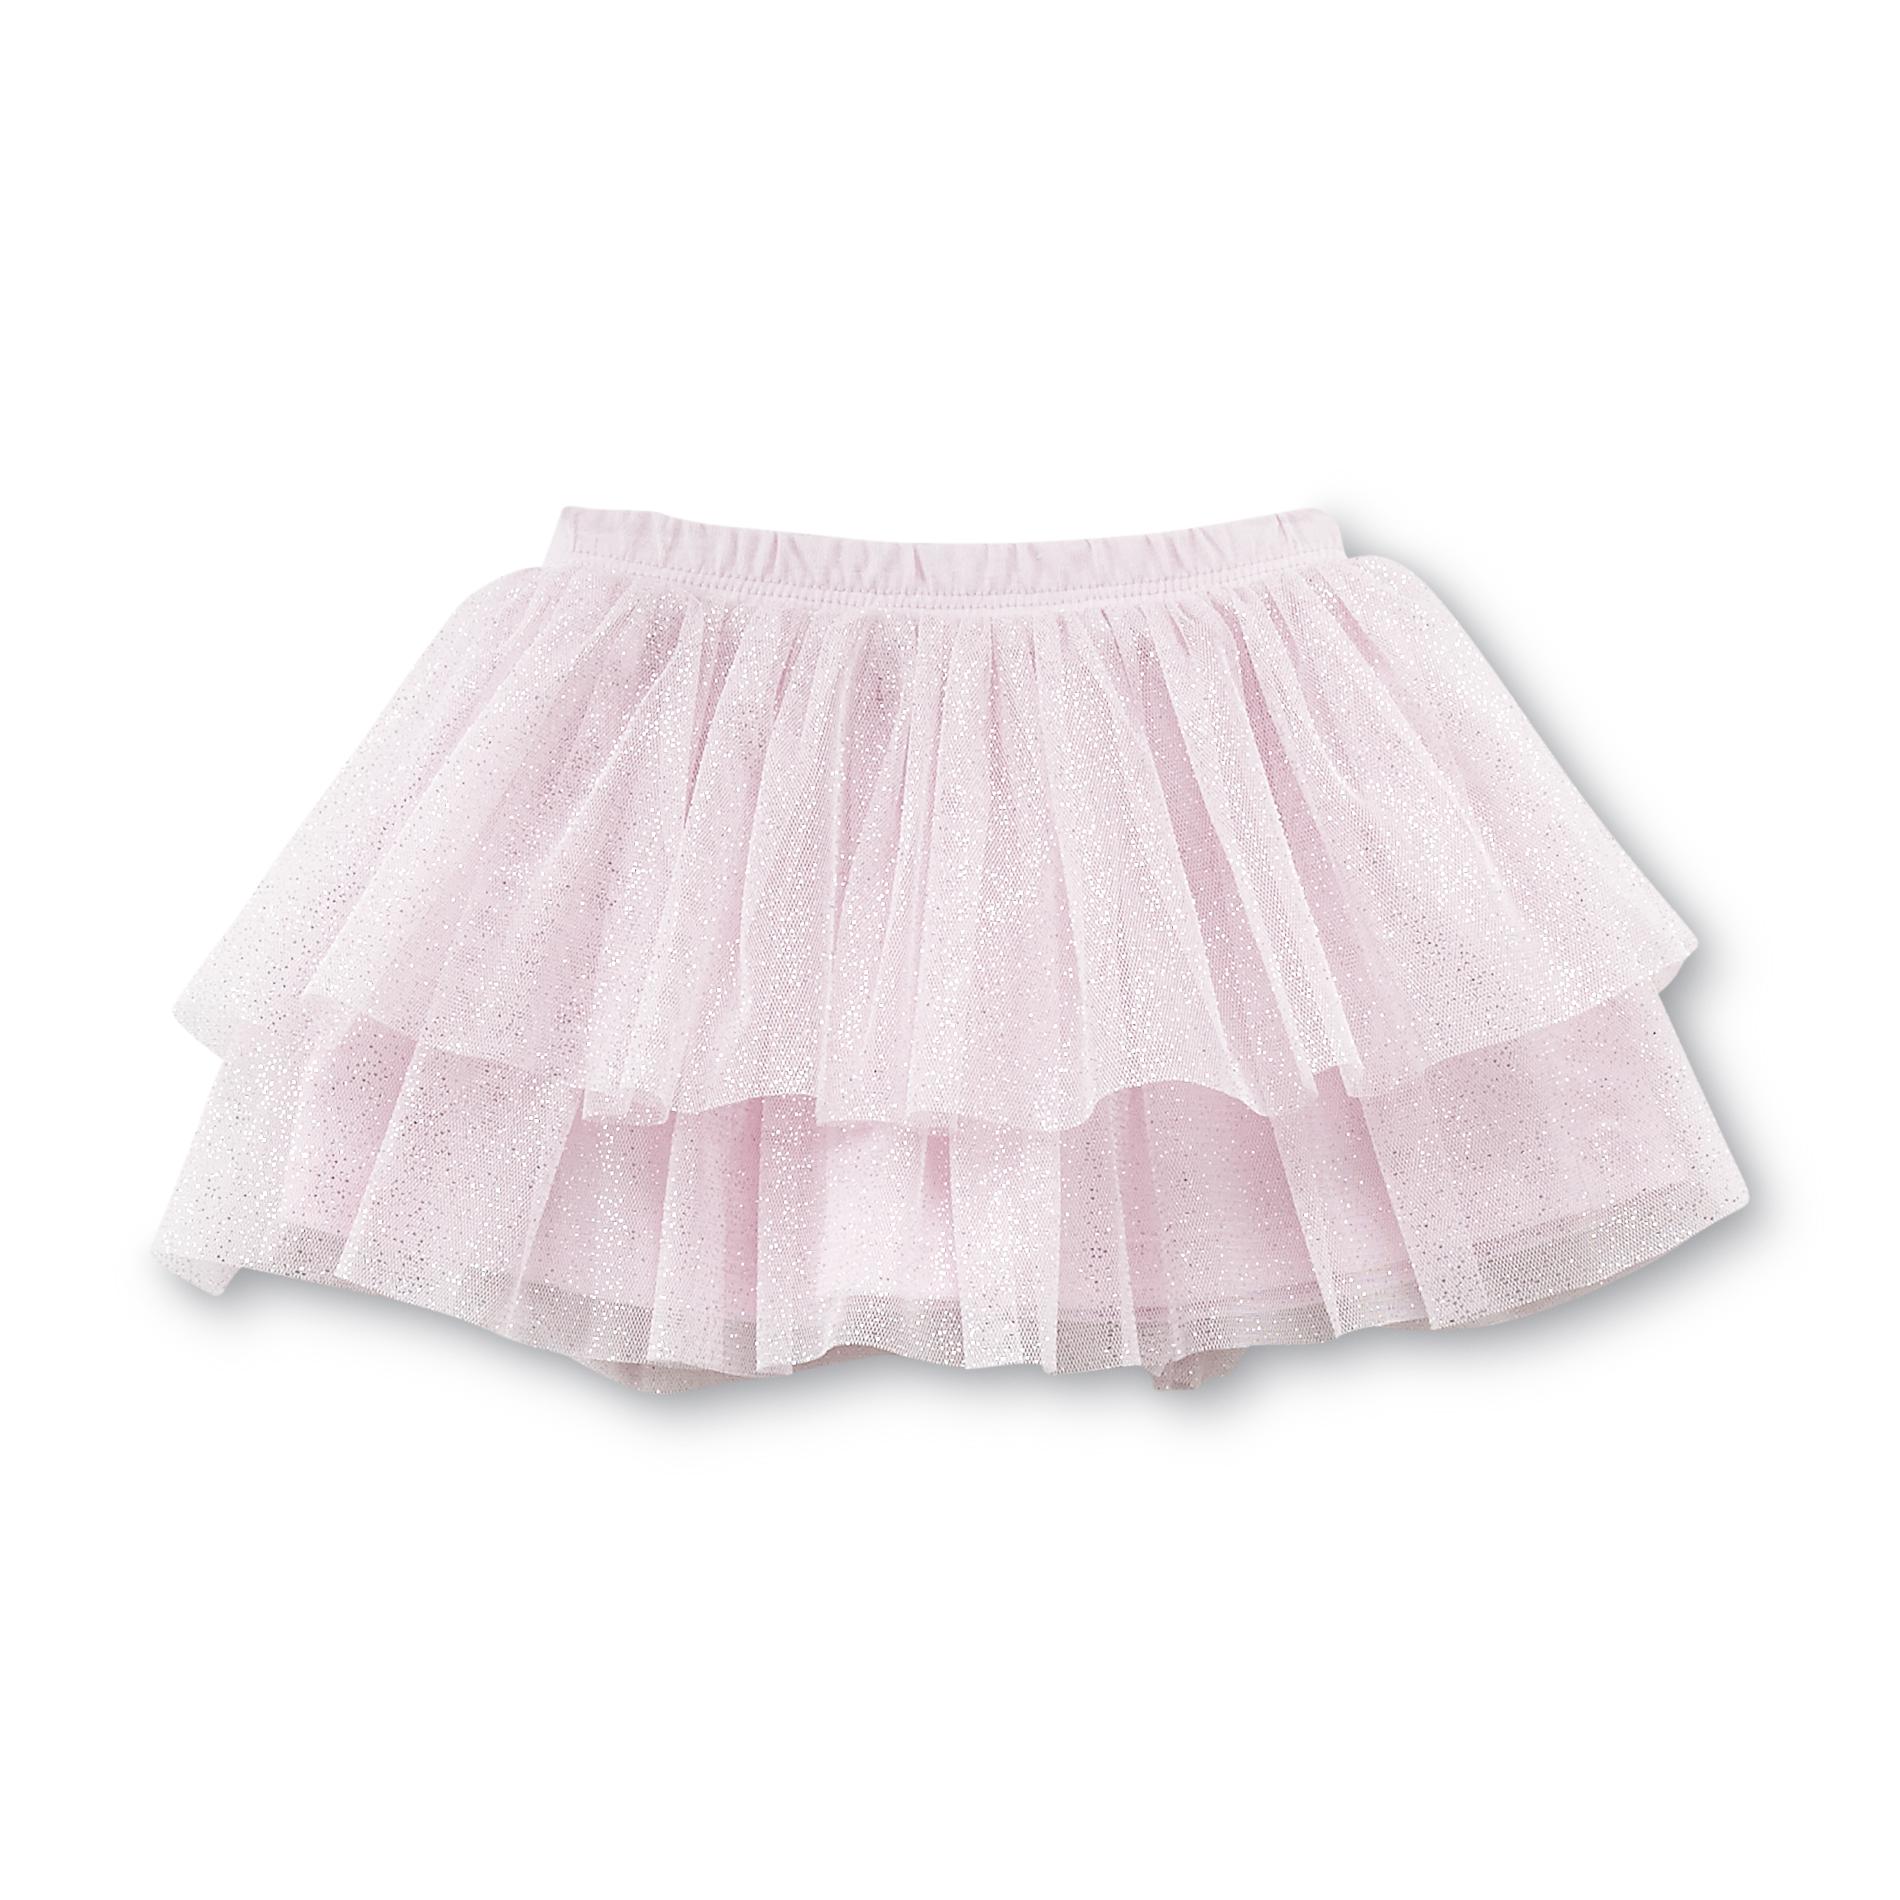 Small Wonders Newborn Girl's Tutu Skirt